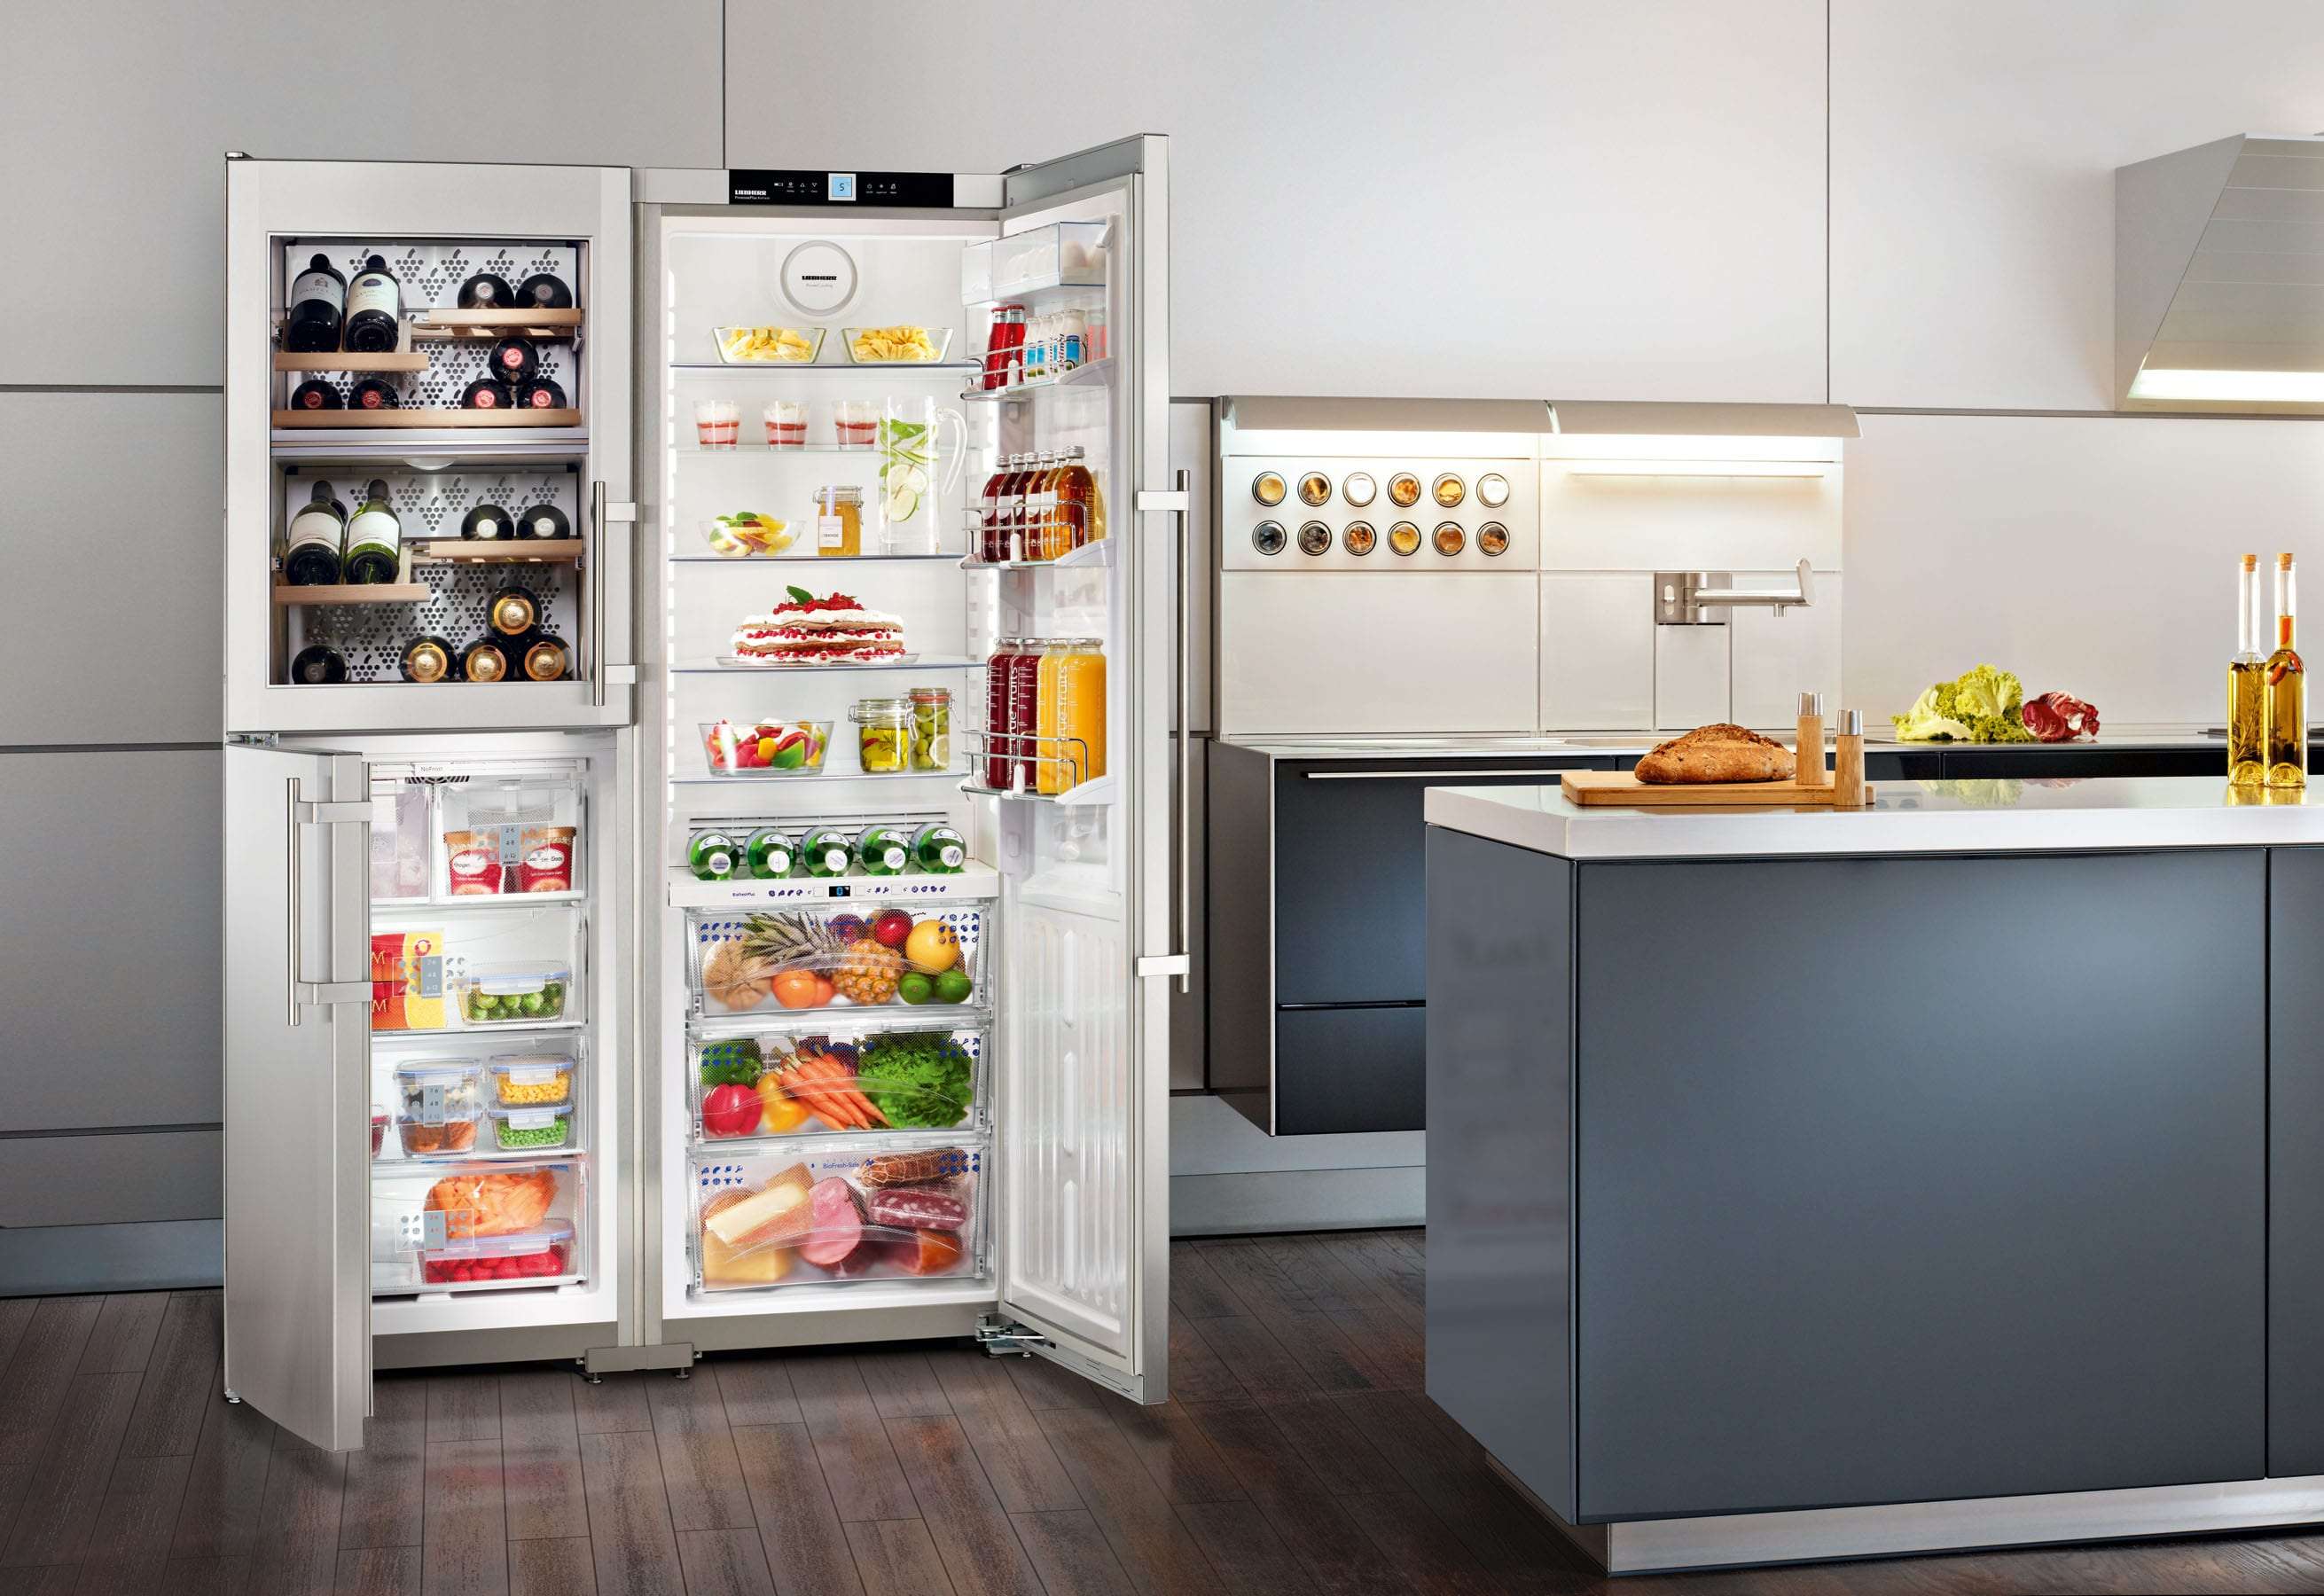 Nên để tủ lạnh ở số mấy để tiết kiệm điện?